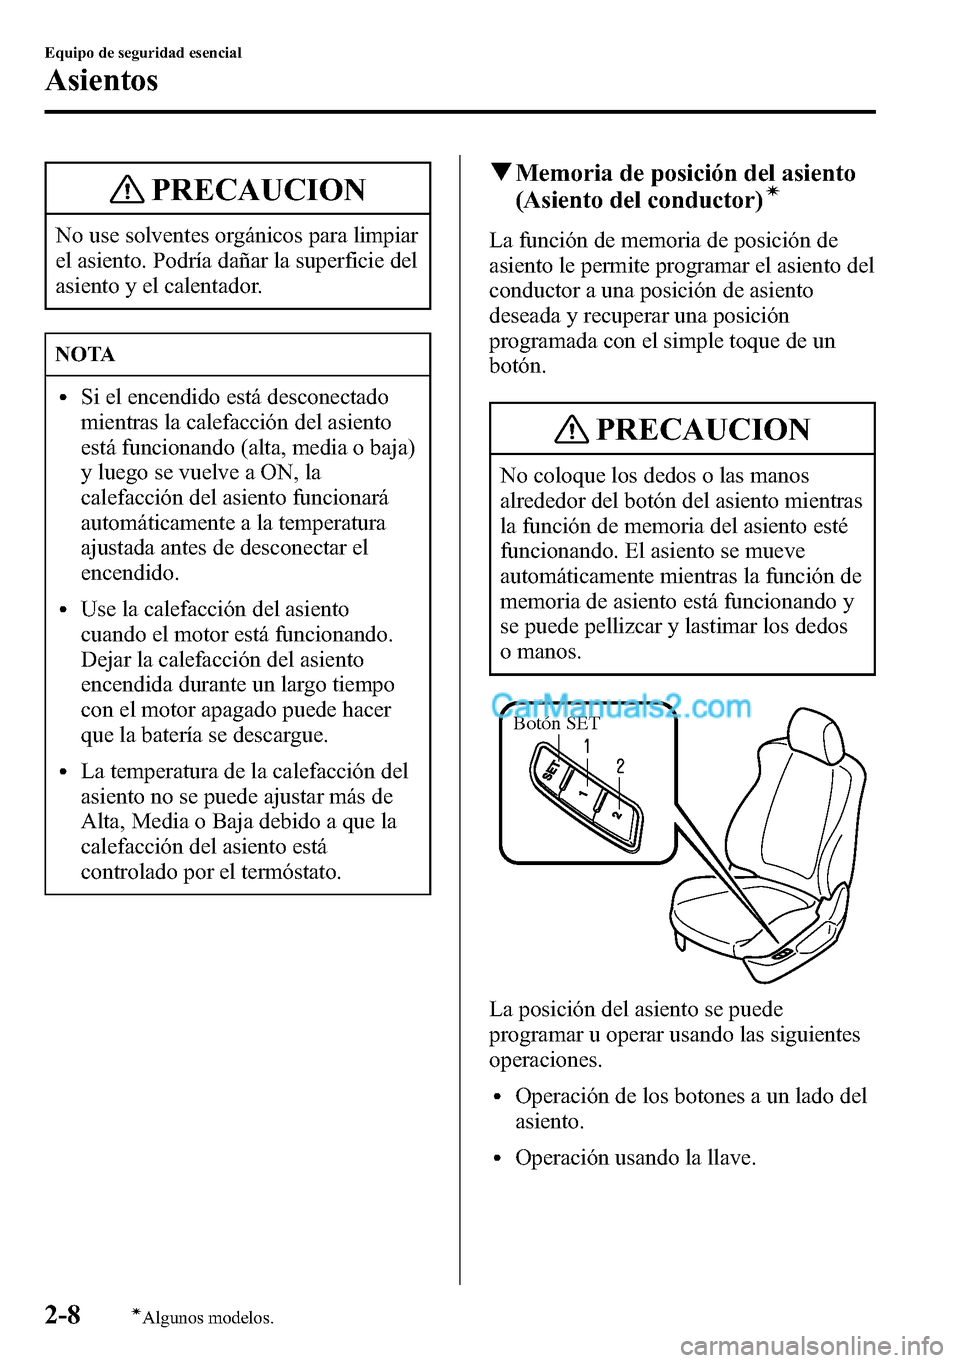 MAZDA MODEL CX-5 2016  Manual del propietario (in Spanish) PRECAUCION
No use solventes orgánicos para limpiar
el asiento. Podría dañar la superficie del
asiento y el calentador.
NOTA
lSi el encendido está desconectado
mientras la calefacción del asiento
